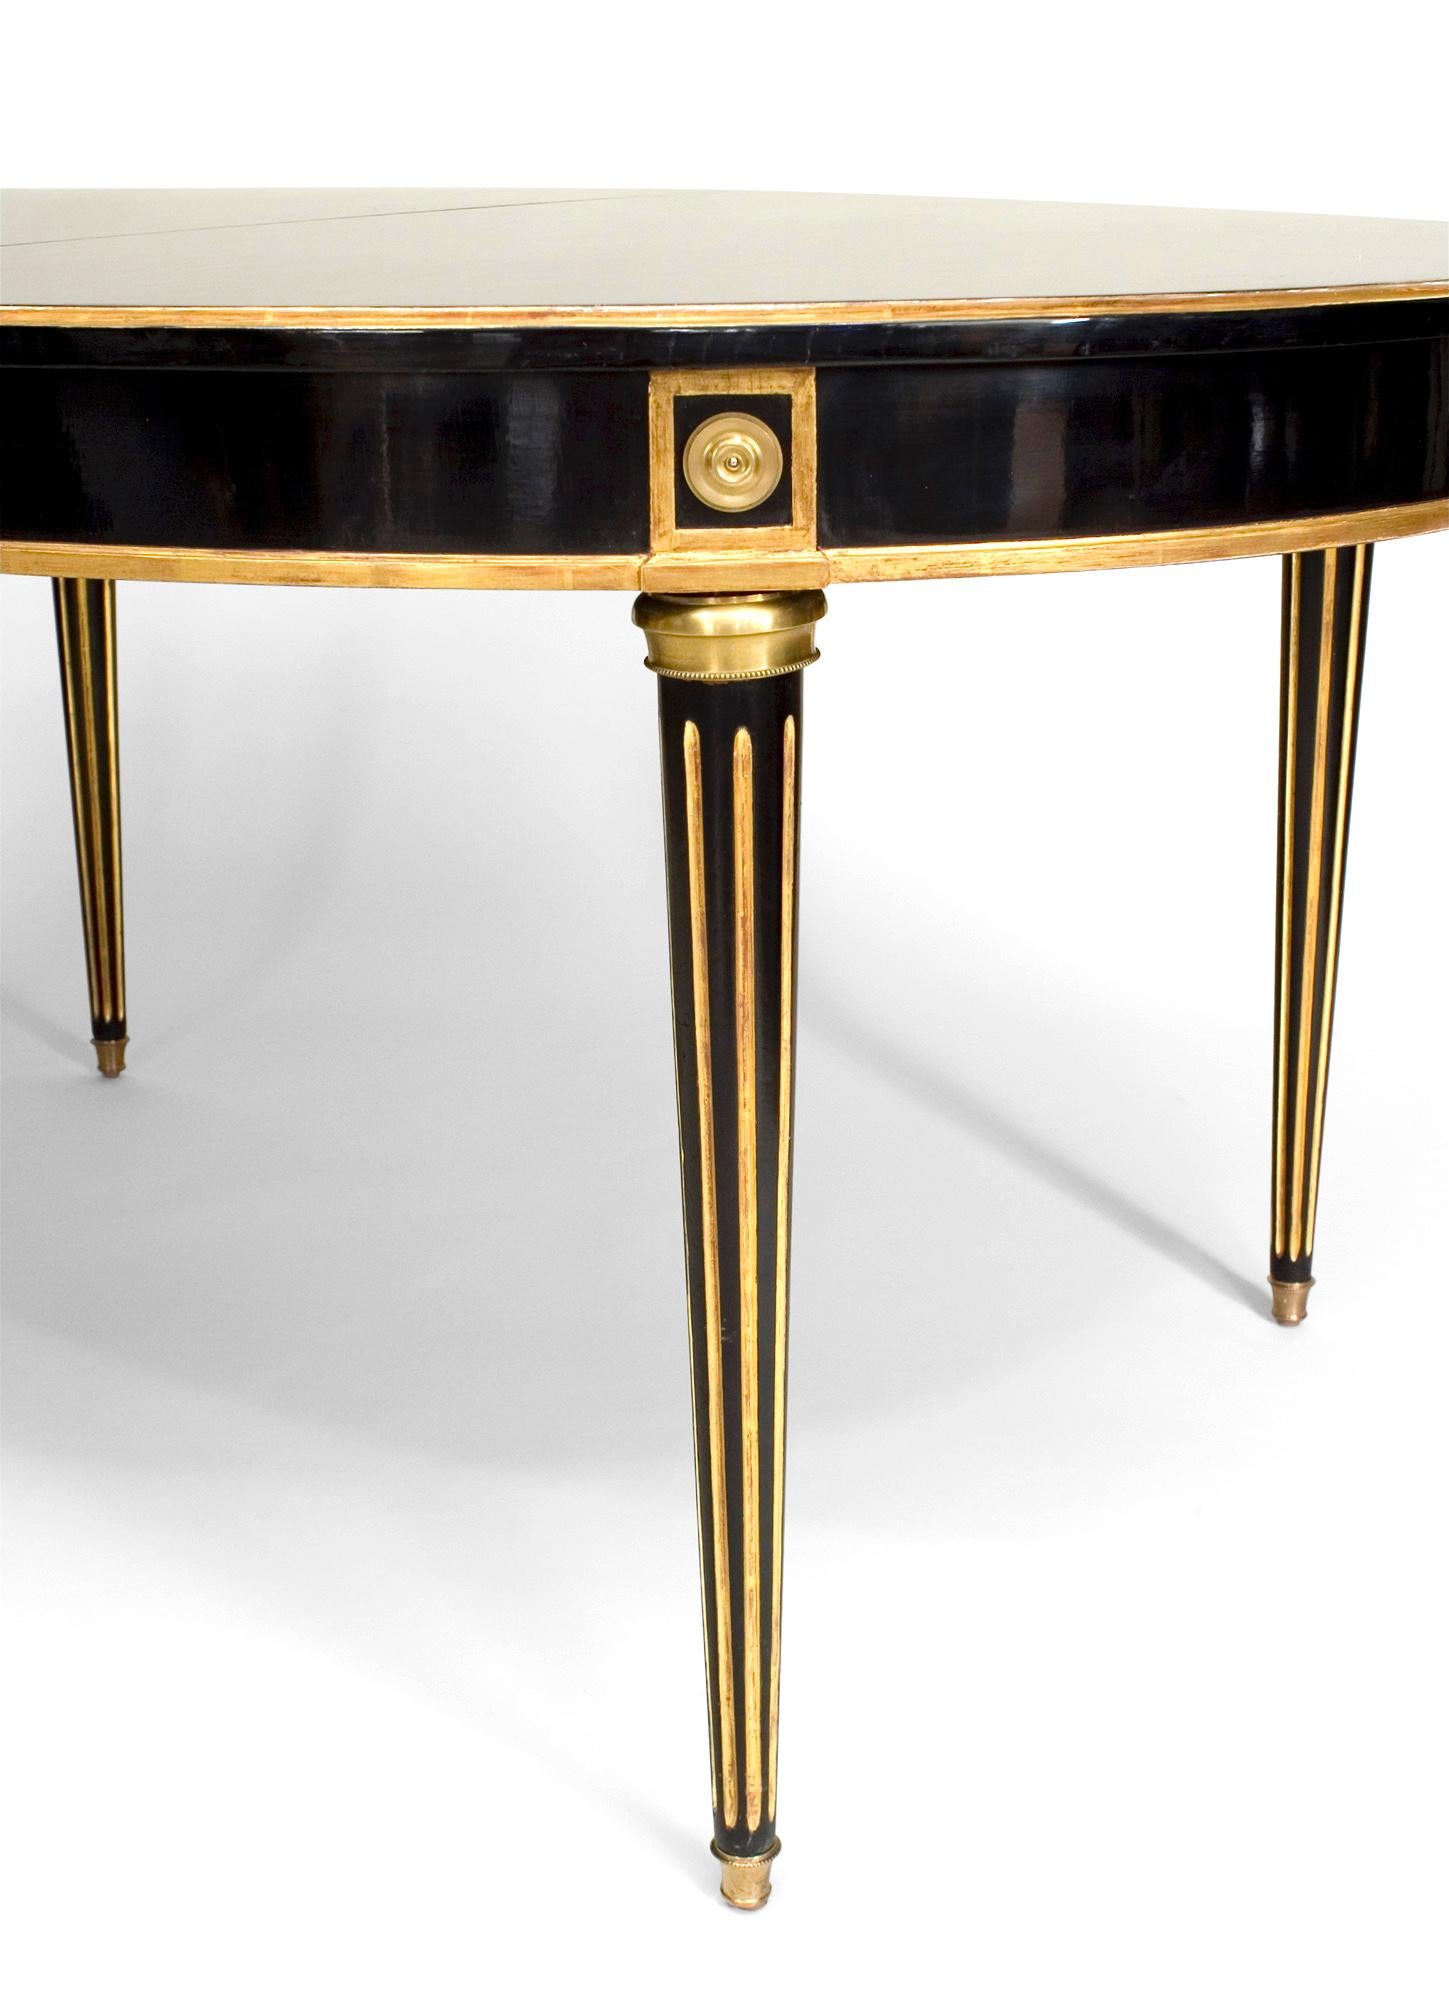 Table de salle à manger ovale de style Louis XVI français (20e siècle) en ébène avec garniture dorée sur des pieds cannelés, bordure et tablier avec 3 feuilles de 20